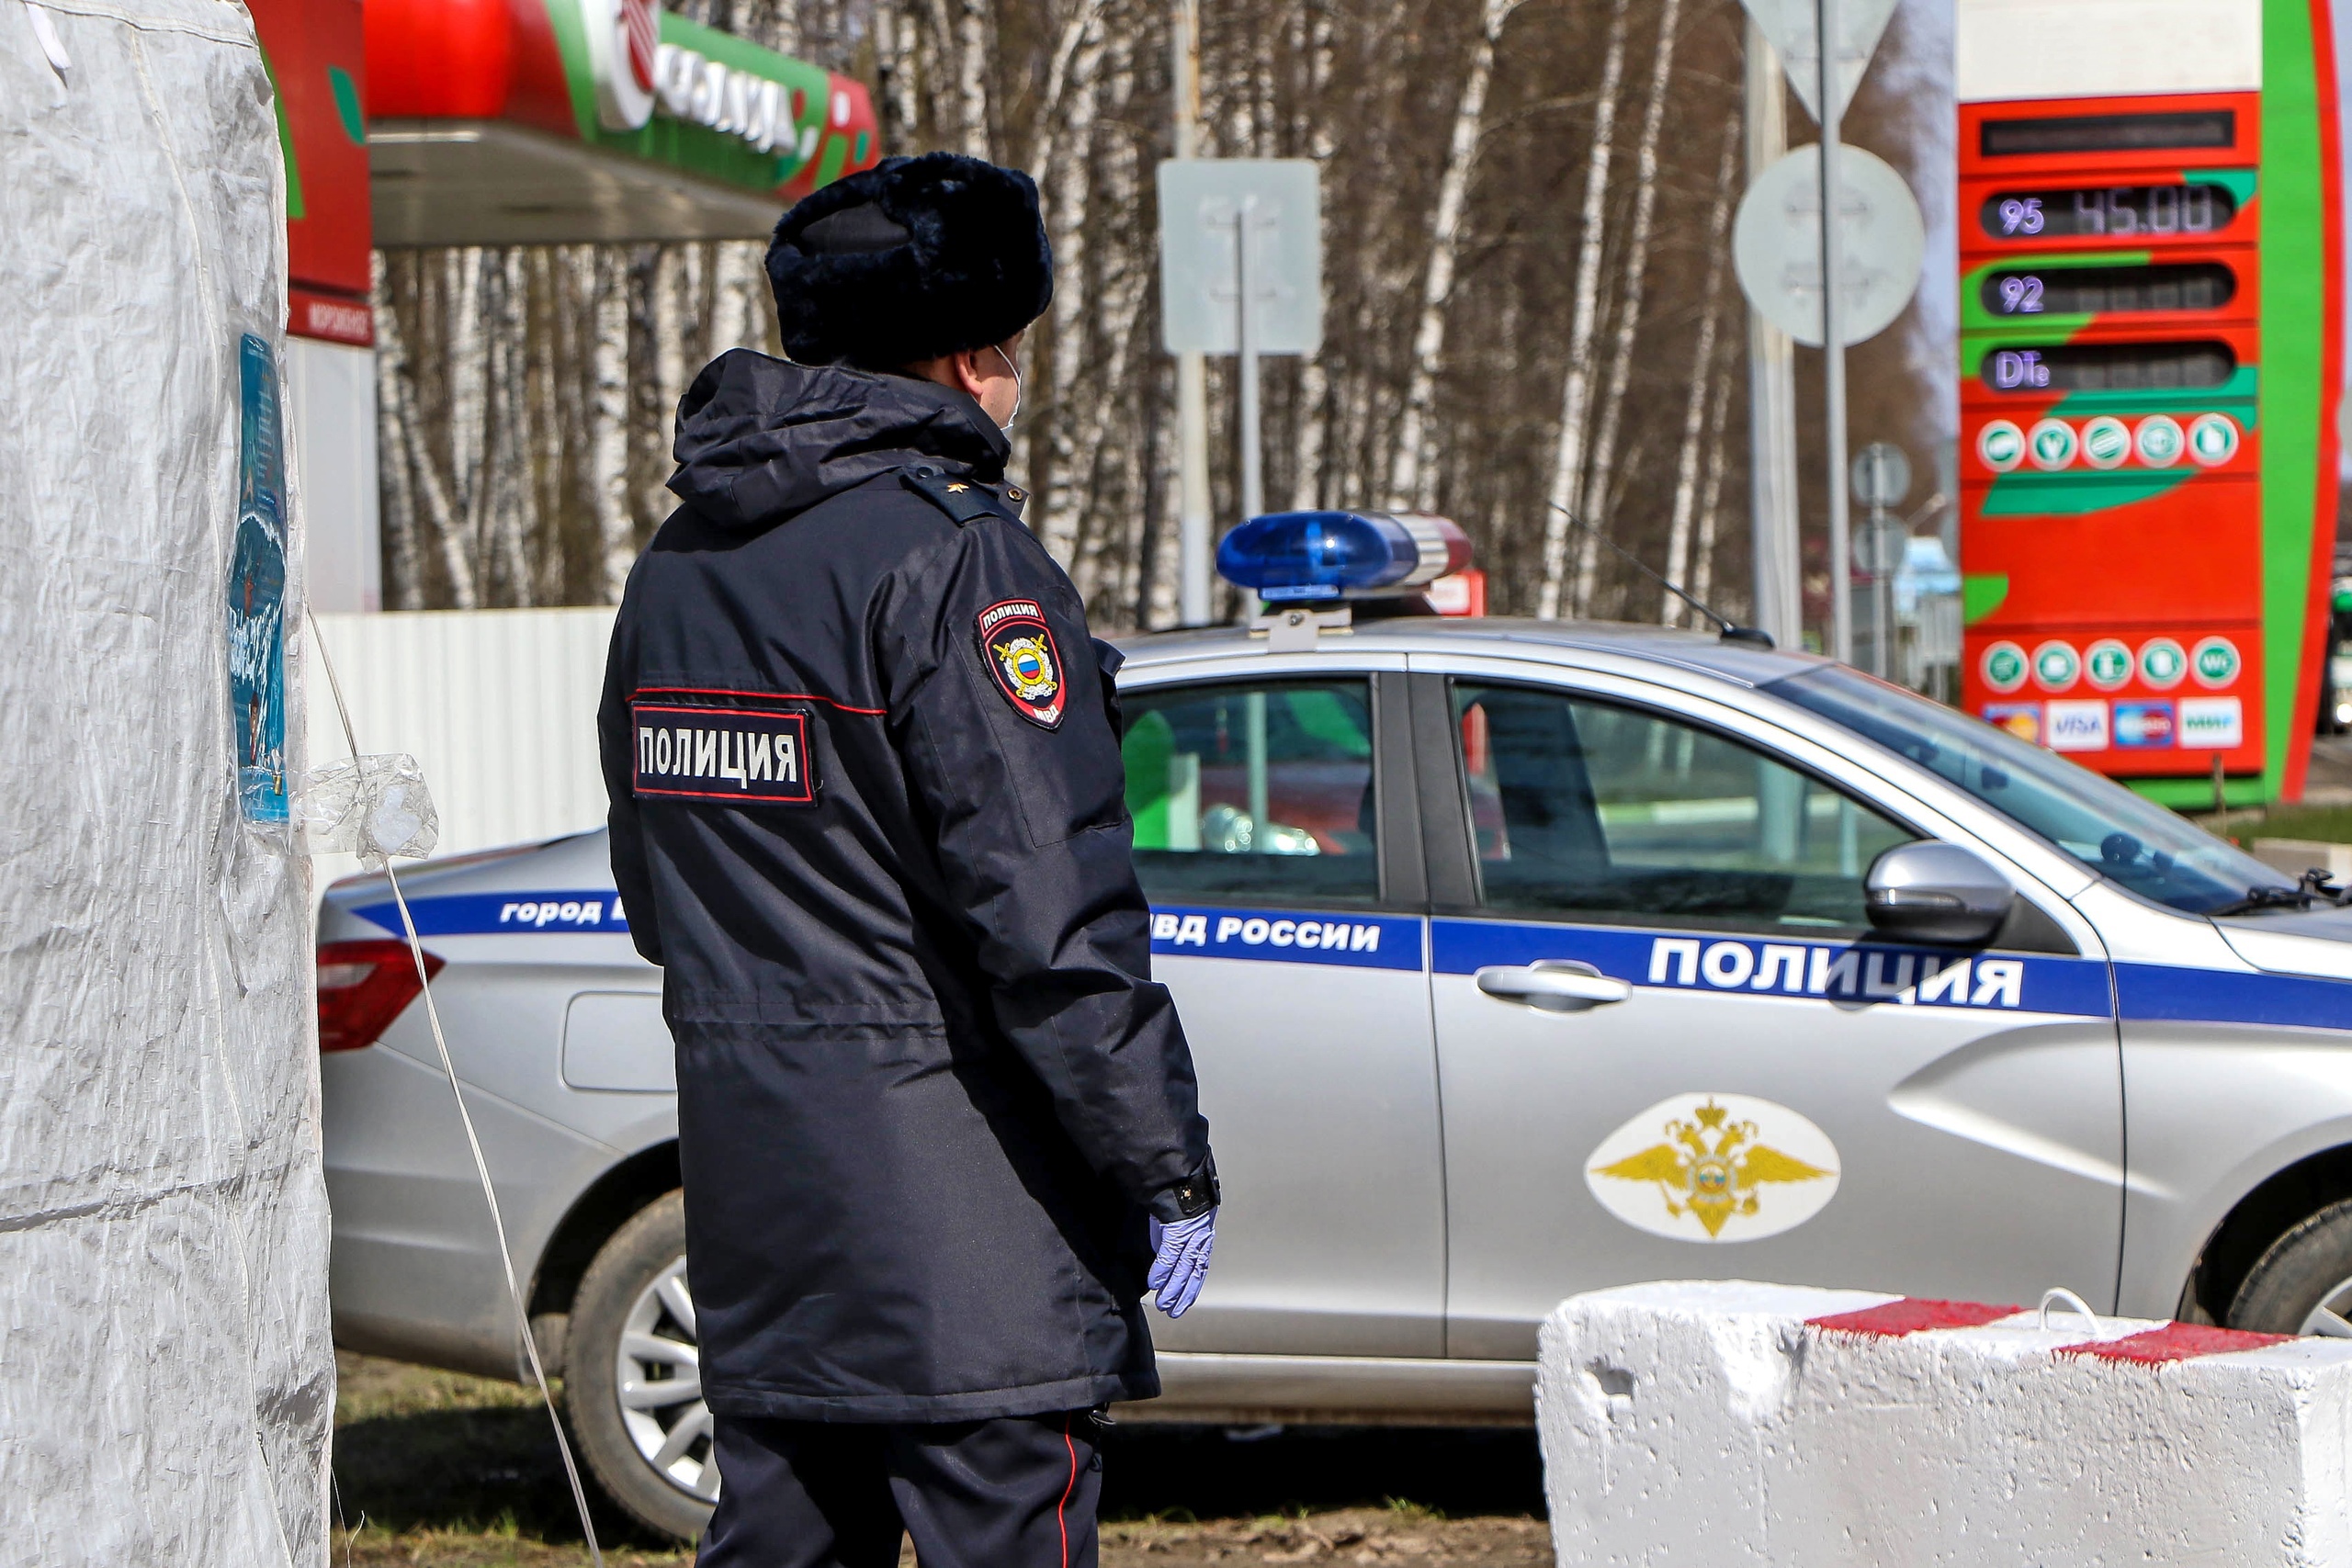 Нижегородец, которого пытали полицейские, получил компенсацию в 4,3 миллиона рублей